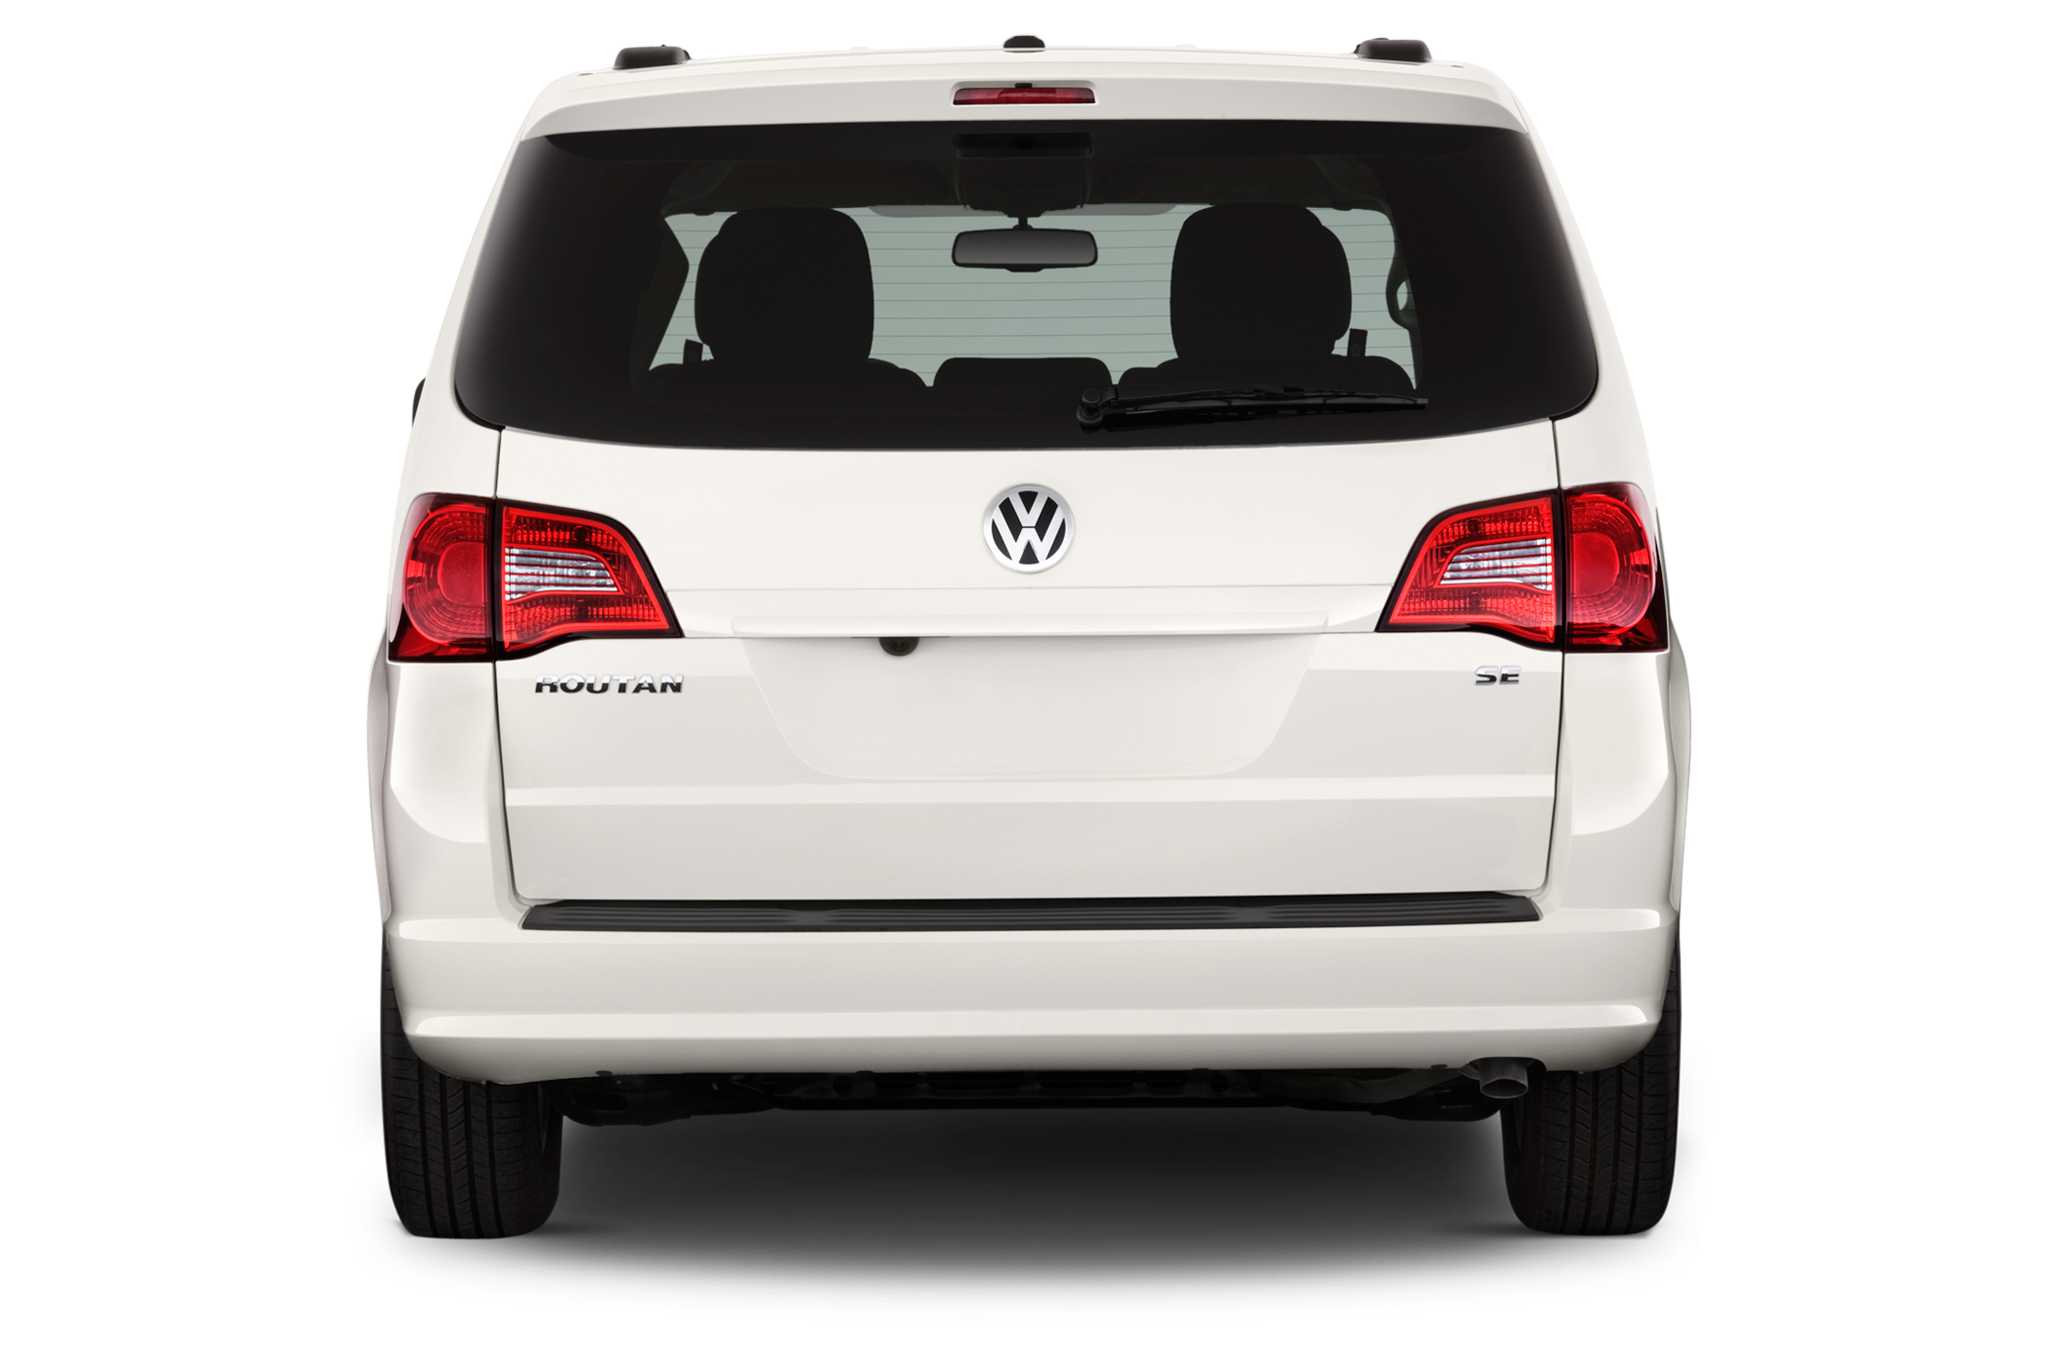 Volkswagen Routan 2008 - 2012 Minivan #2